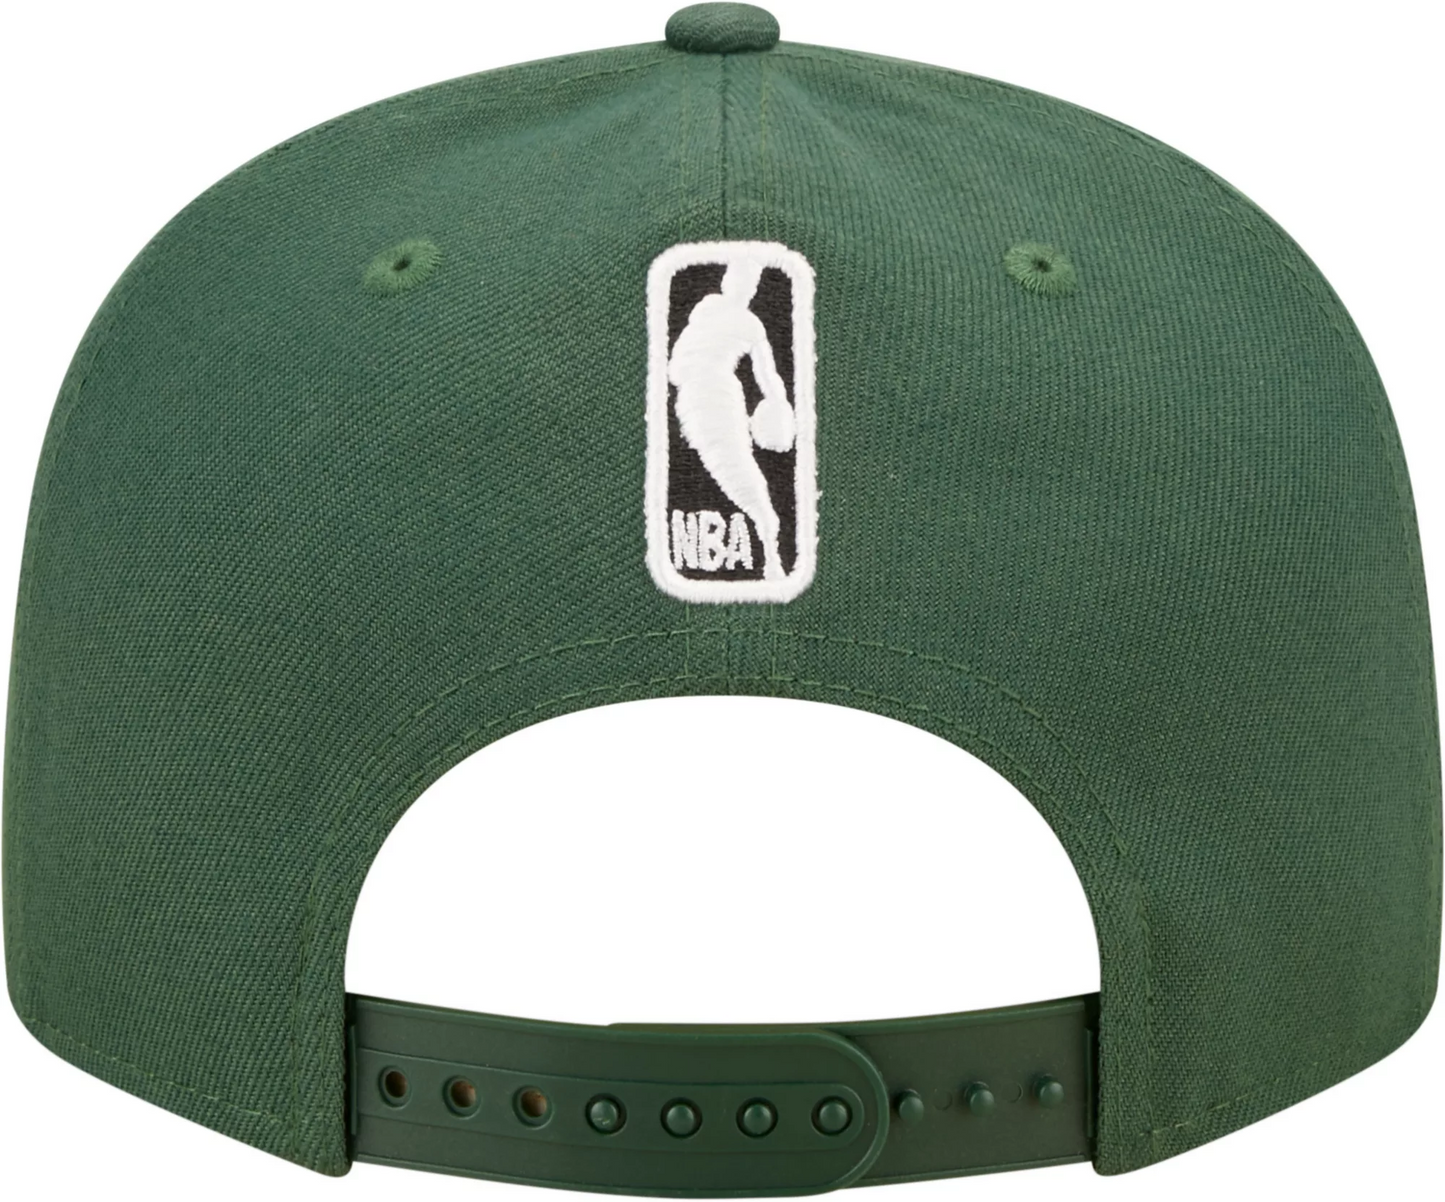 MuzeMerch - Boston Celtics 9FIFTY Snapback Hat